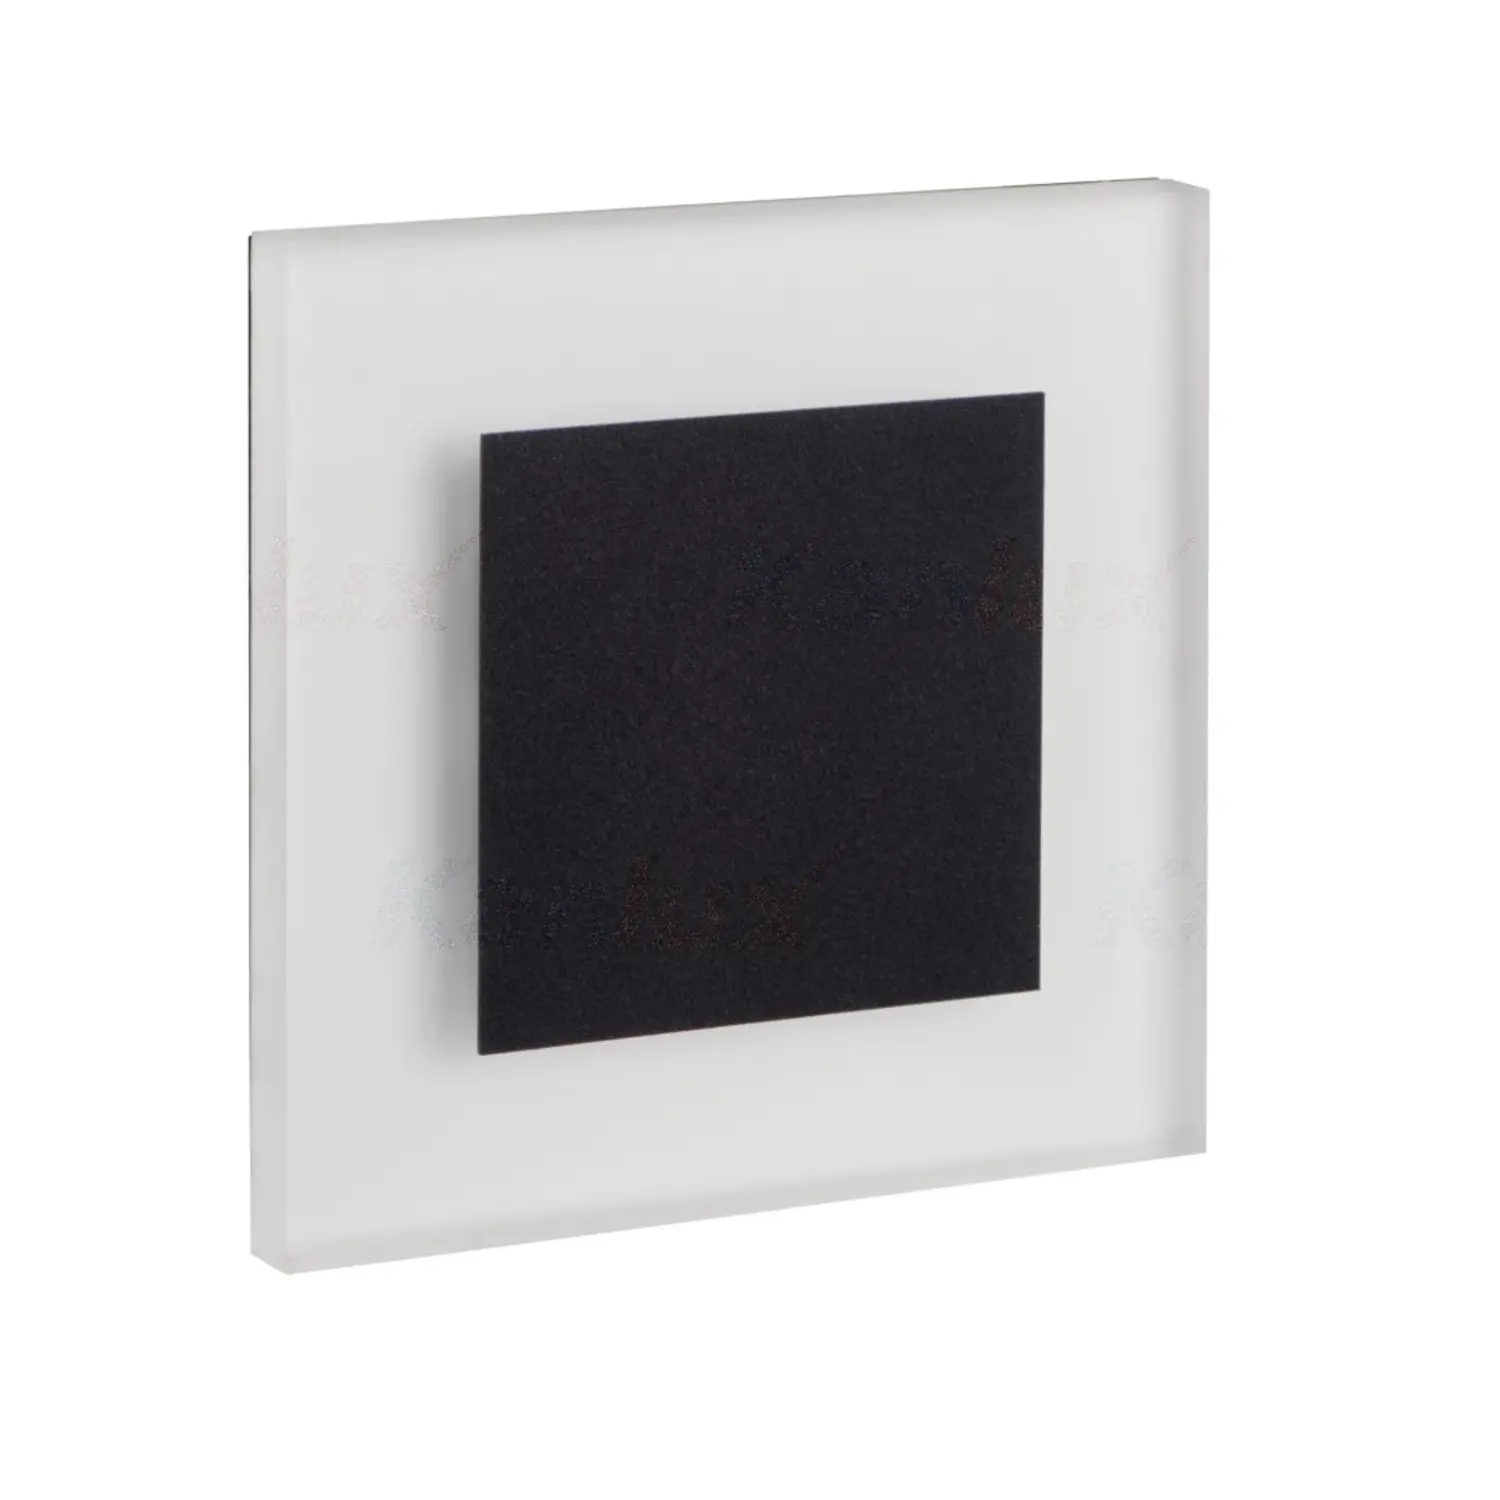 immagine del prodotto segnapasso da incasso led 1,30 watt 220-240 volt bianco caldo nero quadrato